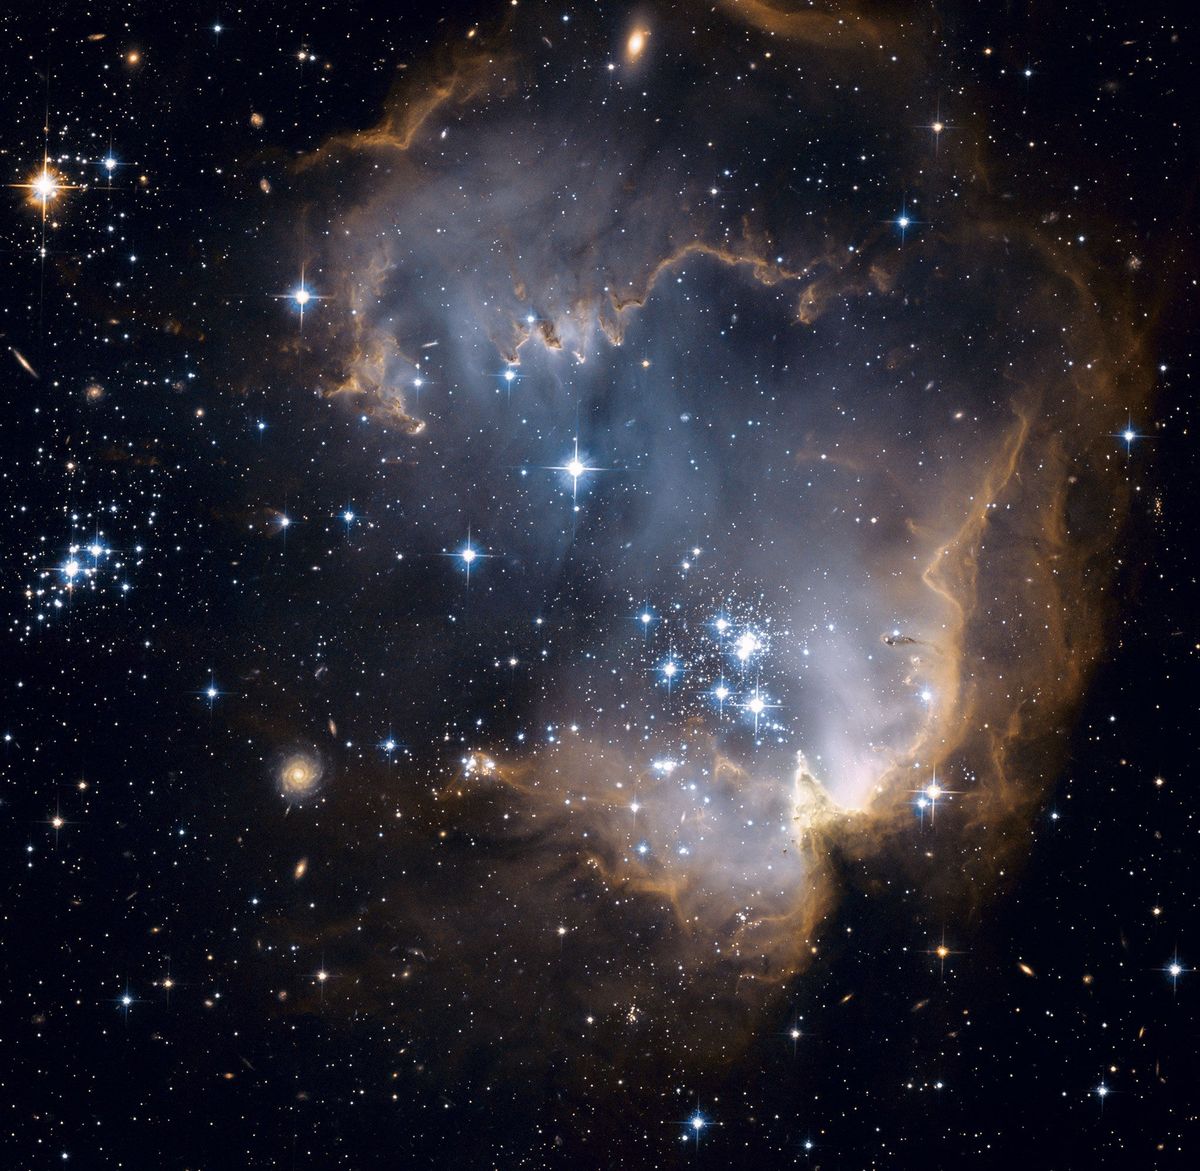 In deze opname van ruimtetelescoop Hubble is te zien hoe in een regio met veel stervorming binnen de Grote Magelhaense Wolk een lege holte is geblazen door de krachtige straling van pasgeboren sterren